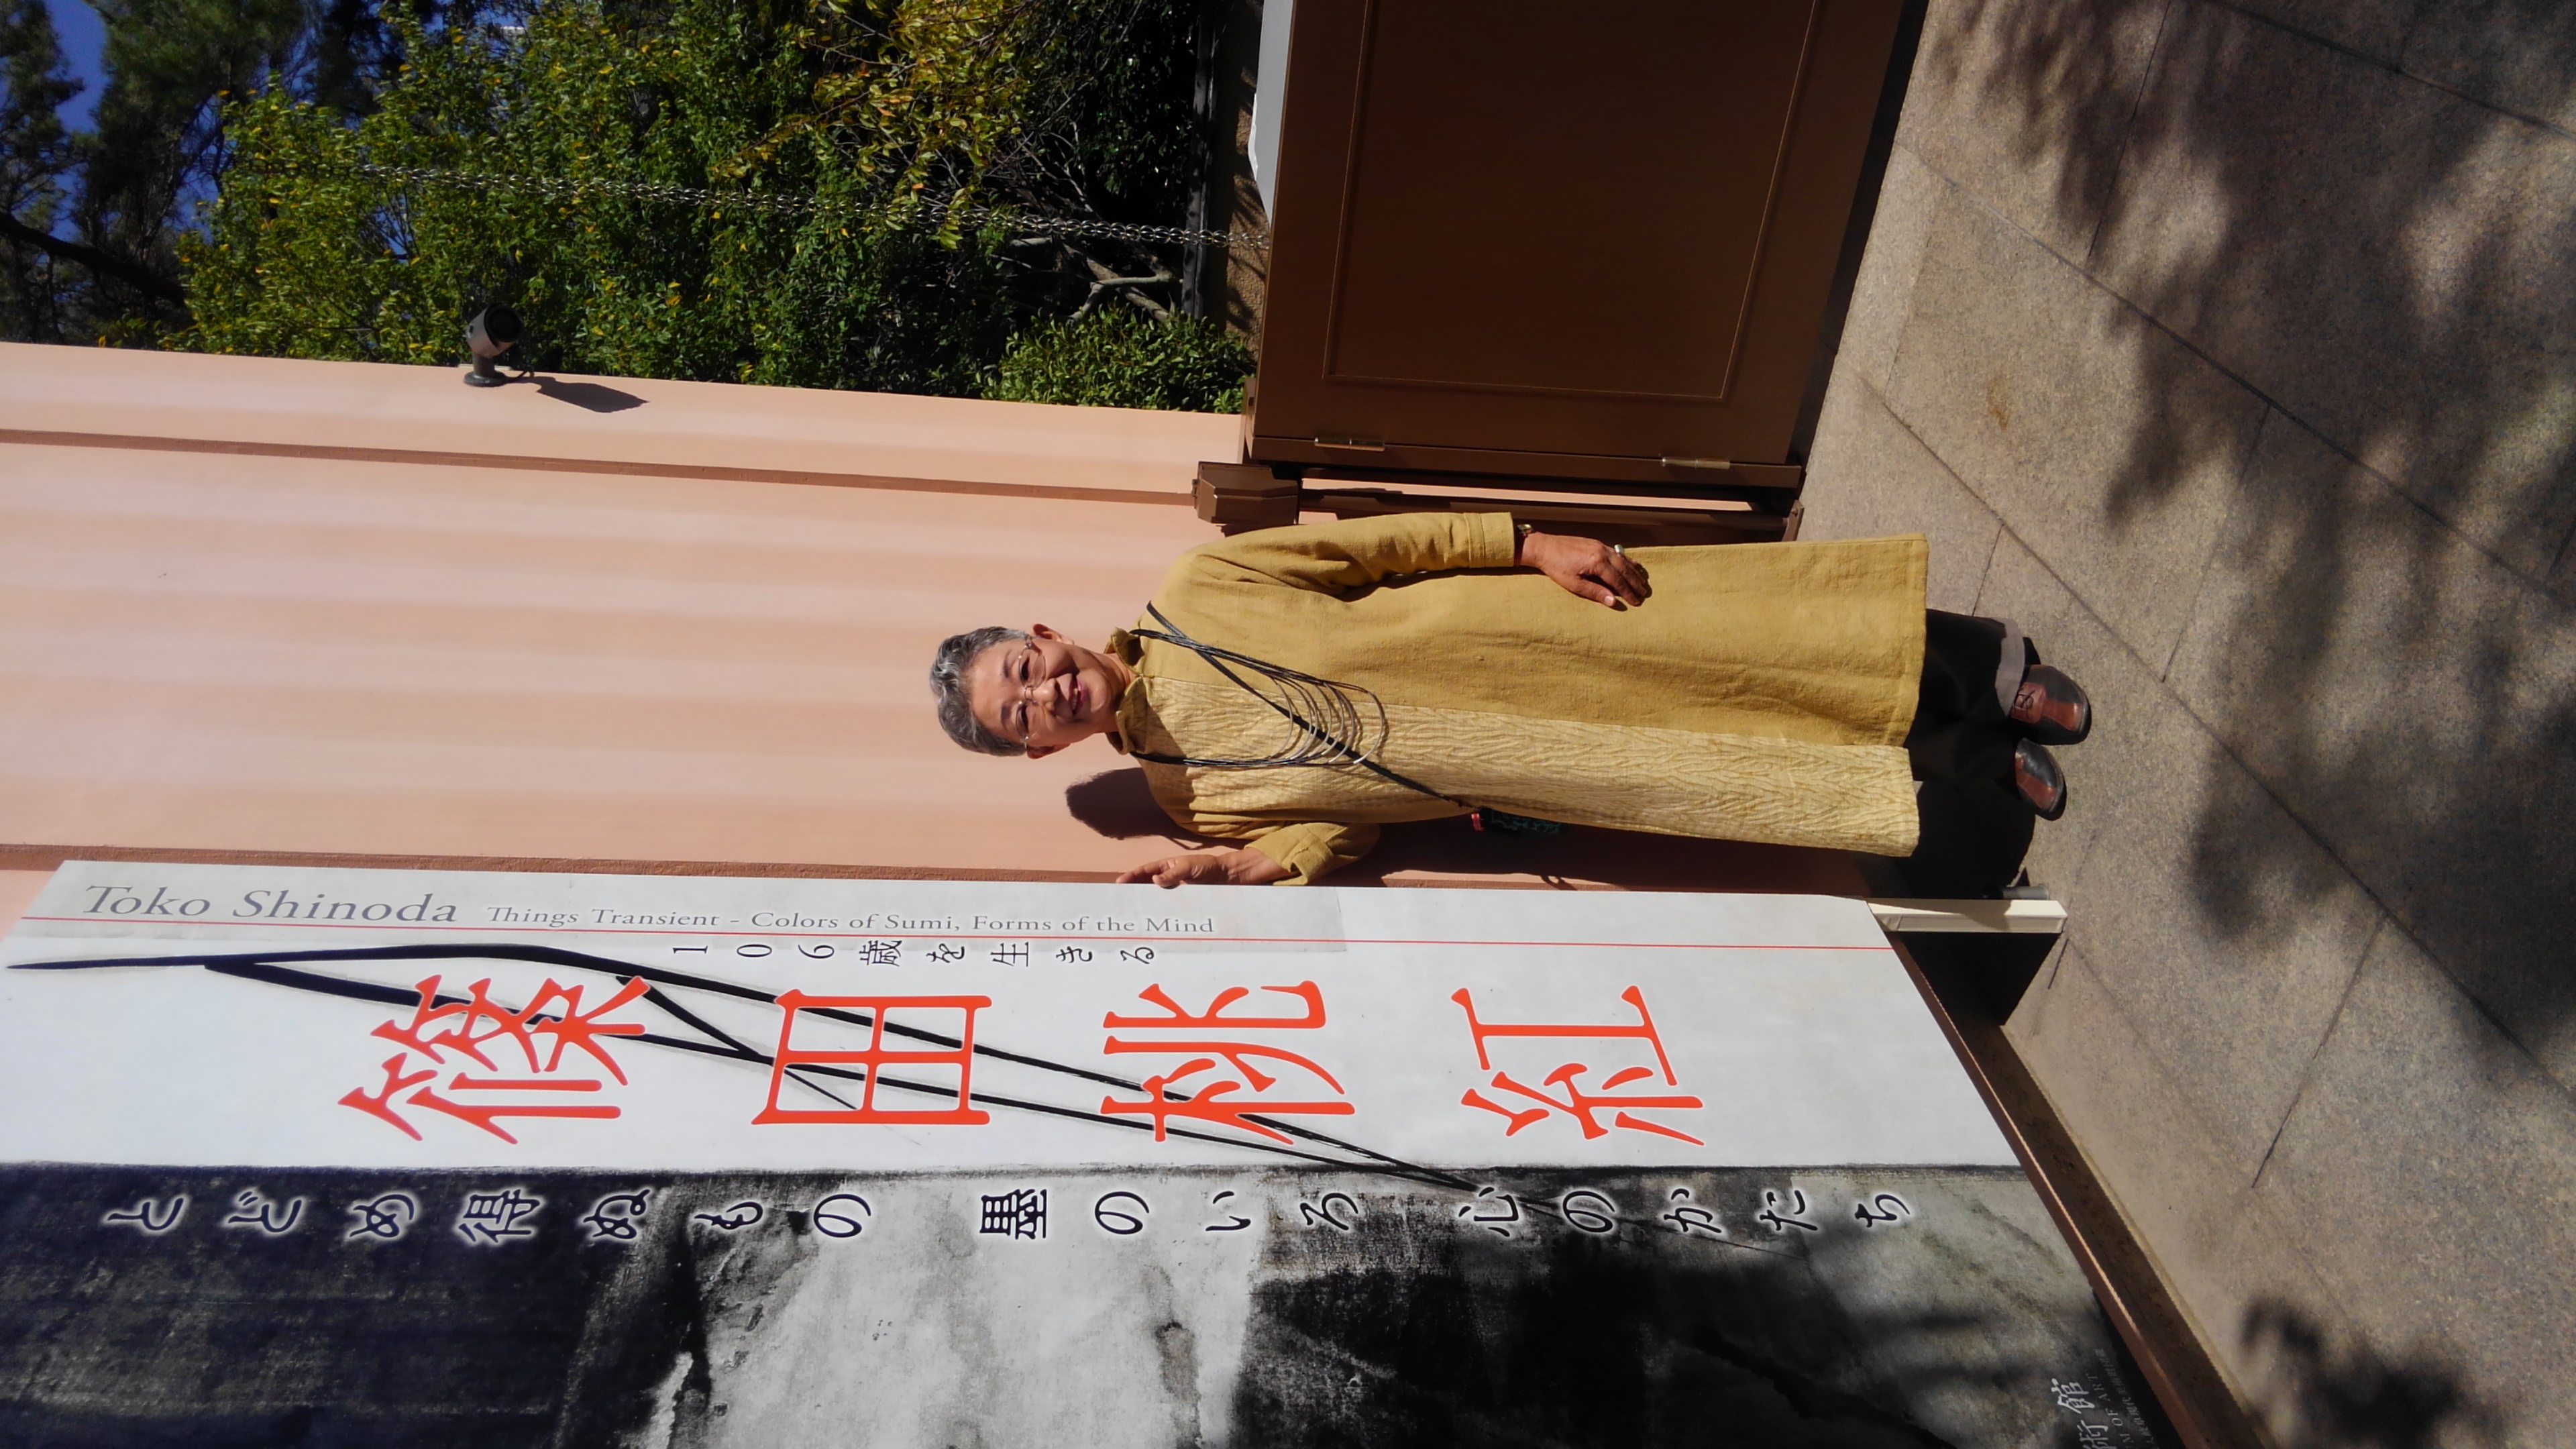 106歳を生きる　篠田桃紅展(香雪美術館)へ行き芸術の秋🍁を楽しみました❗　